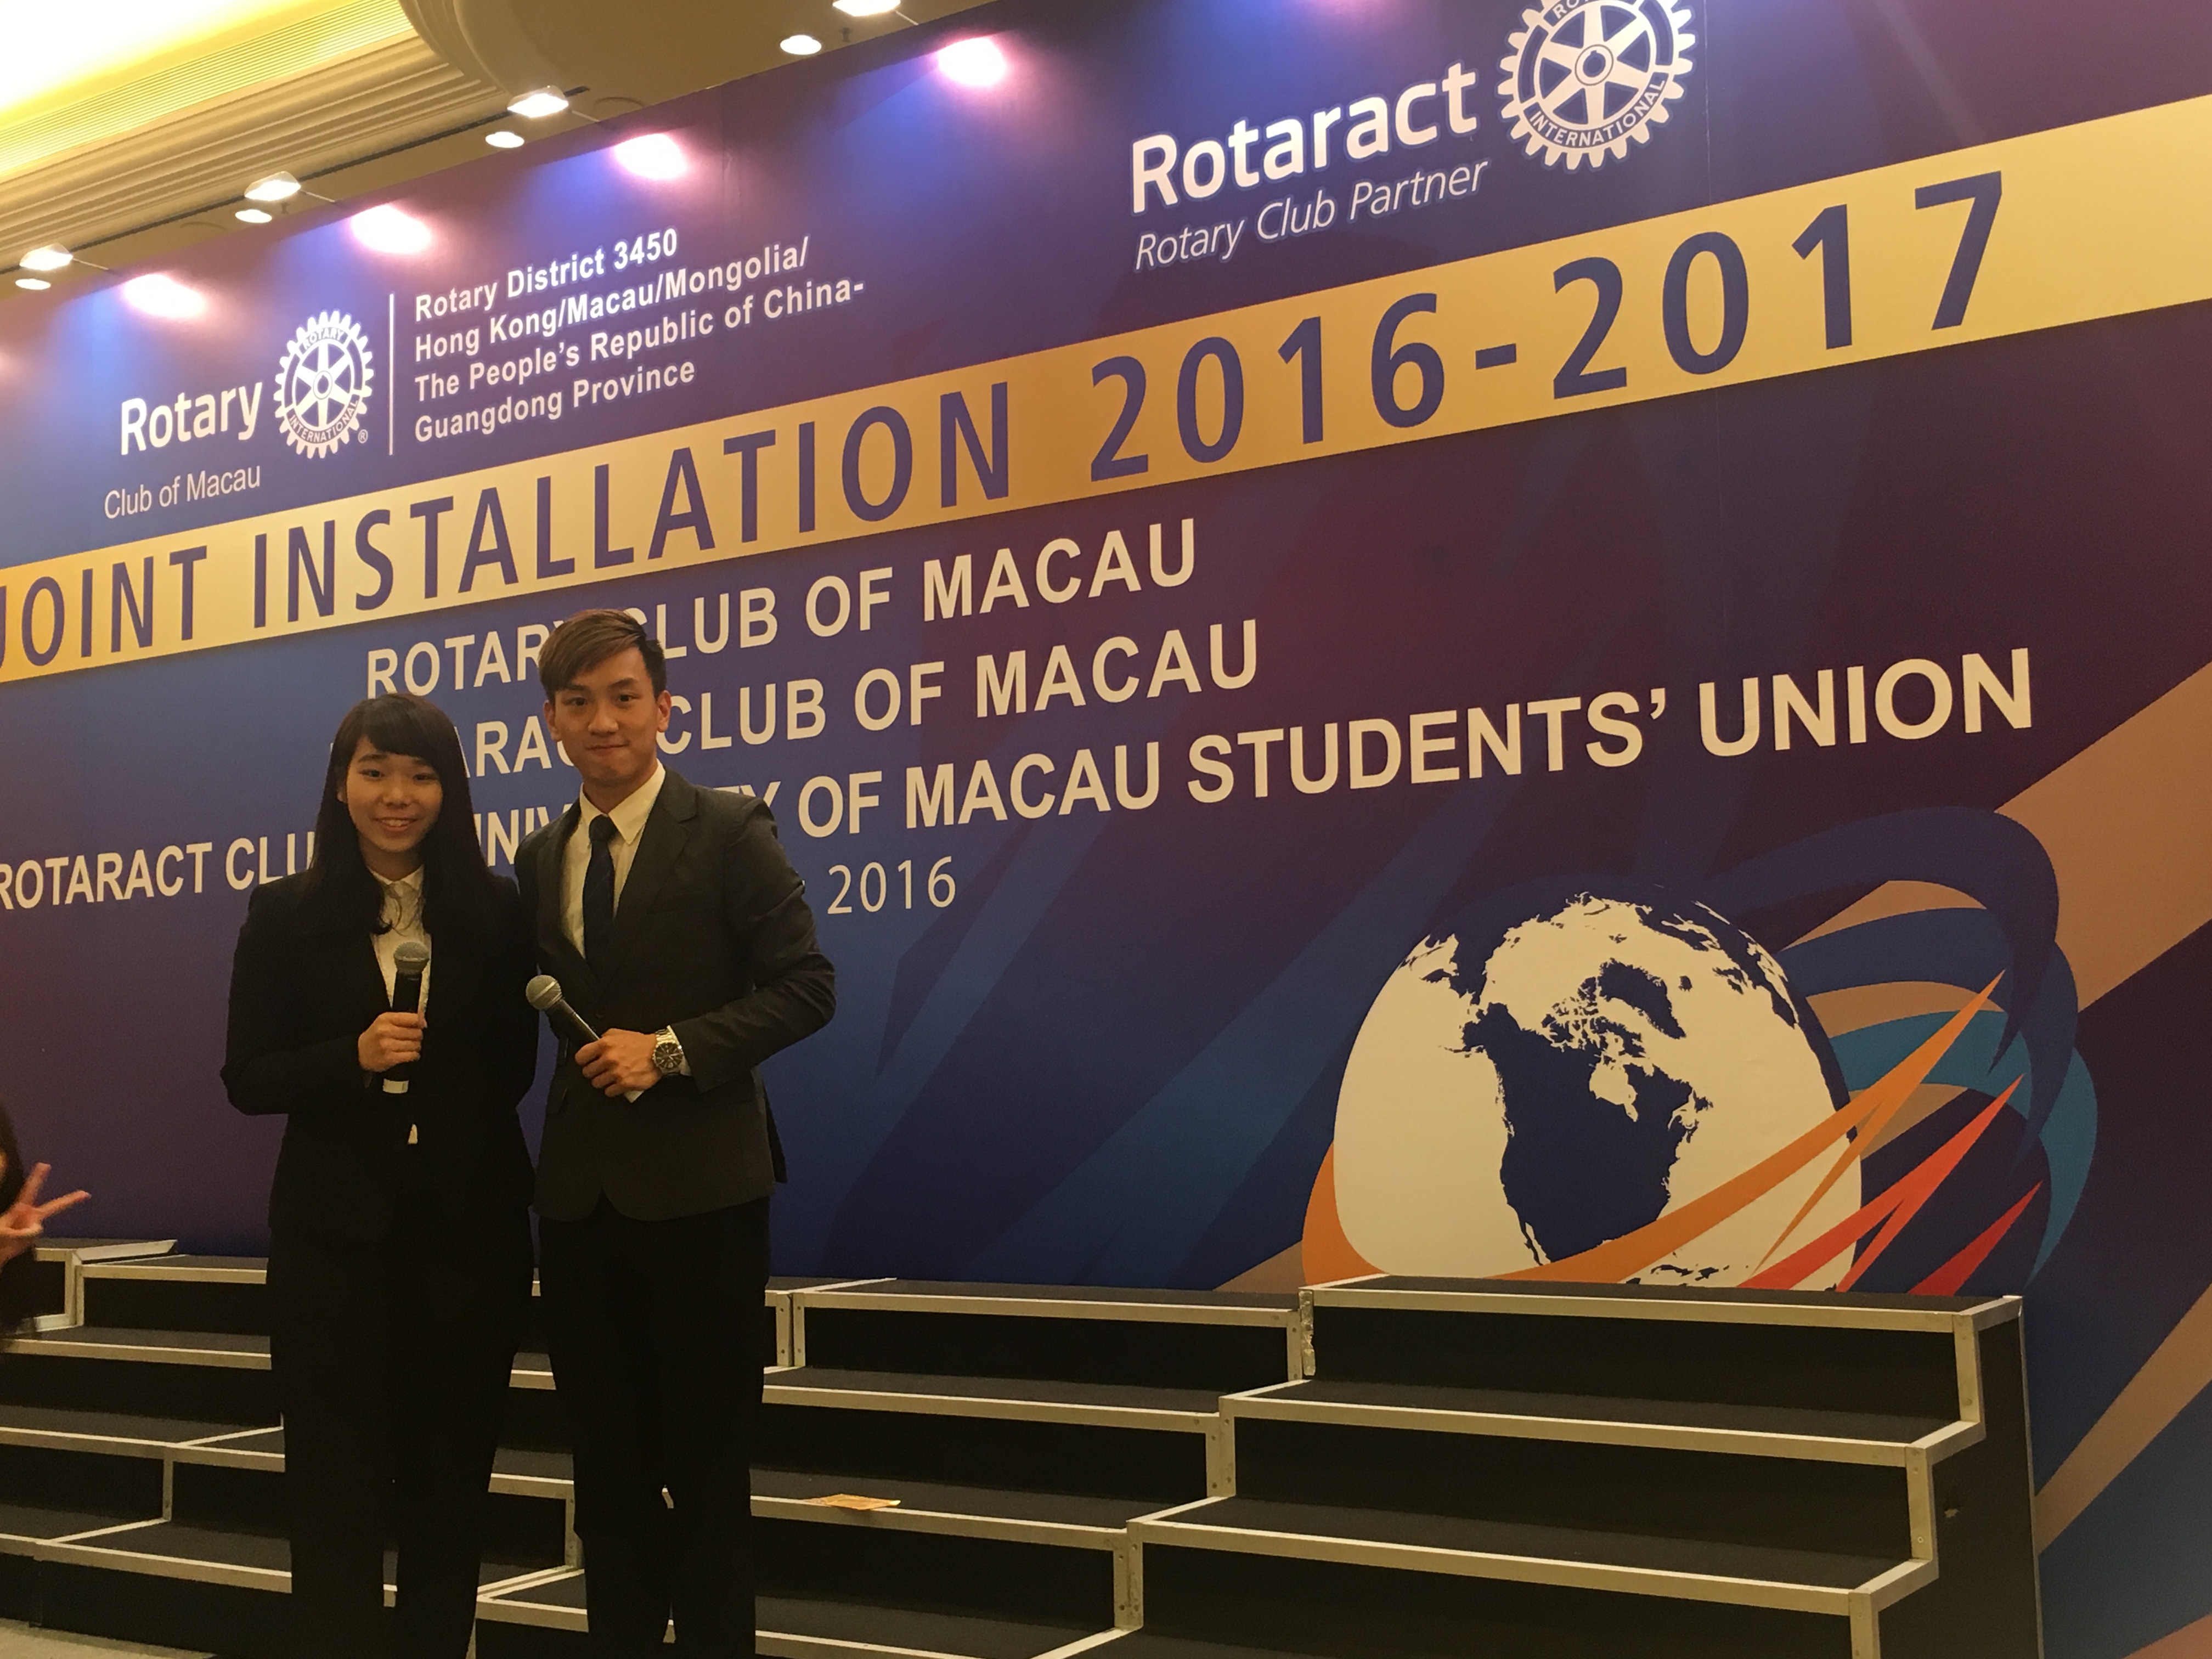 周啓陽 Elvis Chao之司儀主持紀錄: Joint Installation of Rotary Club of Macau, Rotaract Club of Macao and Rotaract Club of UMSU (English)